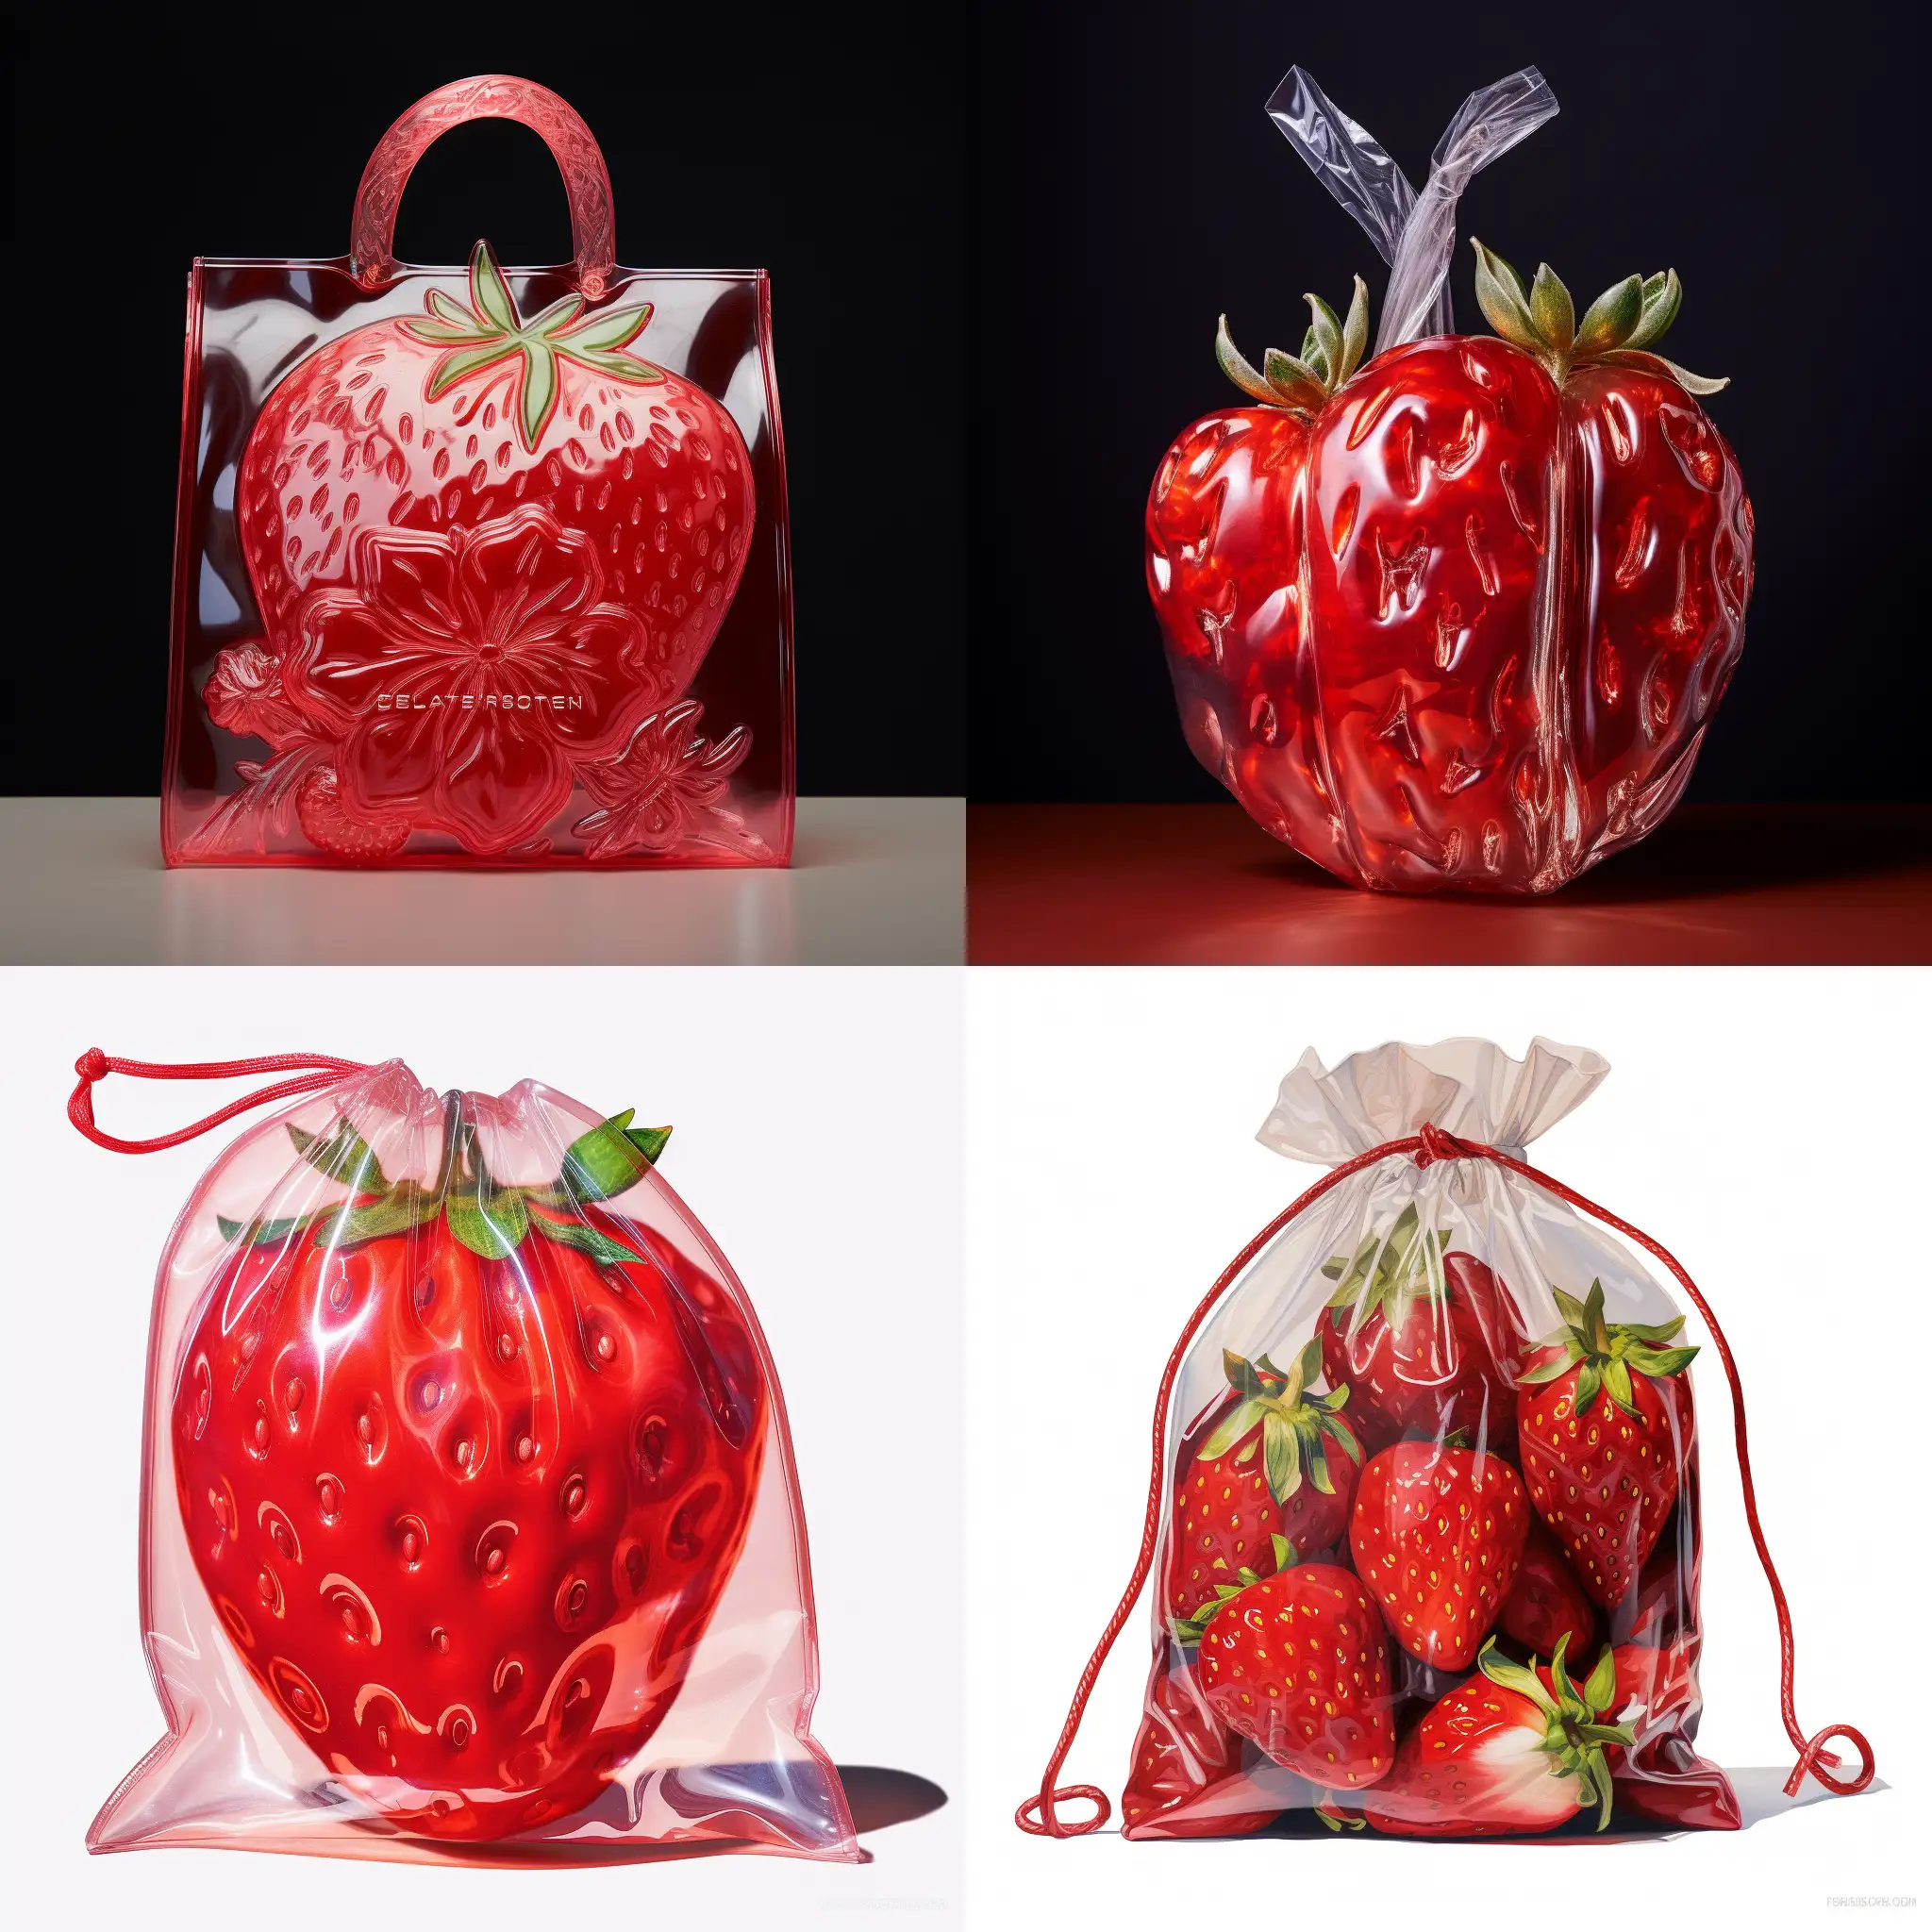 Vibrant-Strawberry-Mylar-Bag-Bright-Red-Packaging-for-Freshness